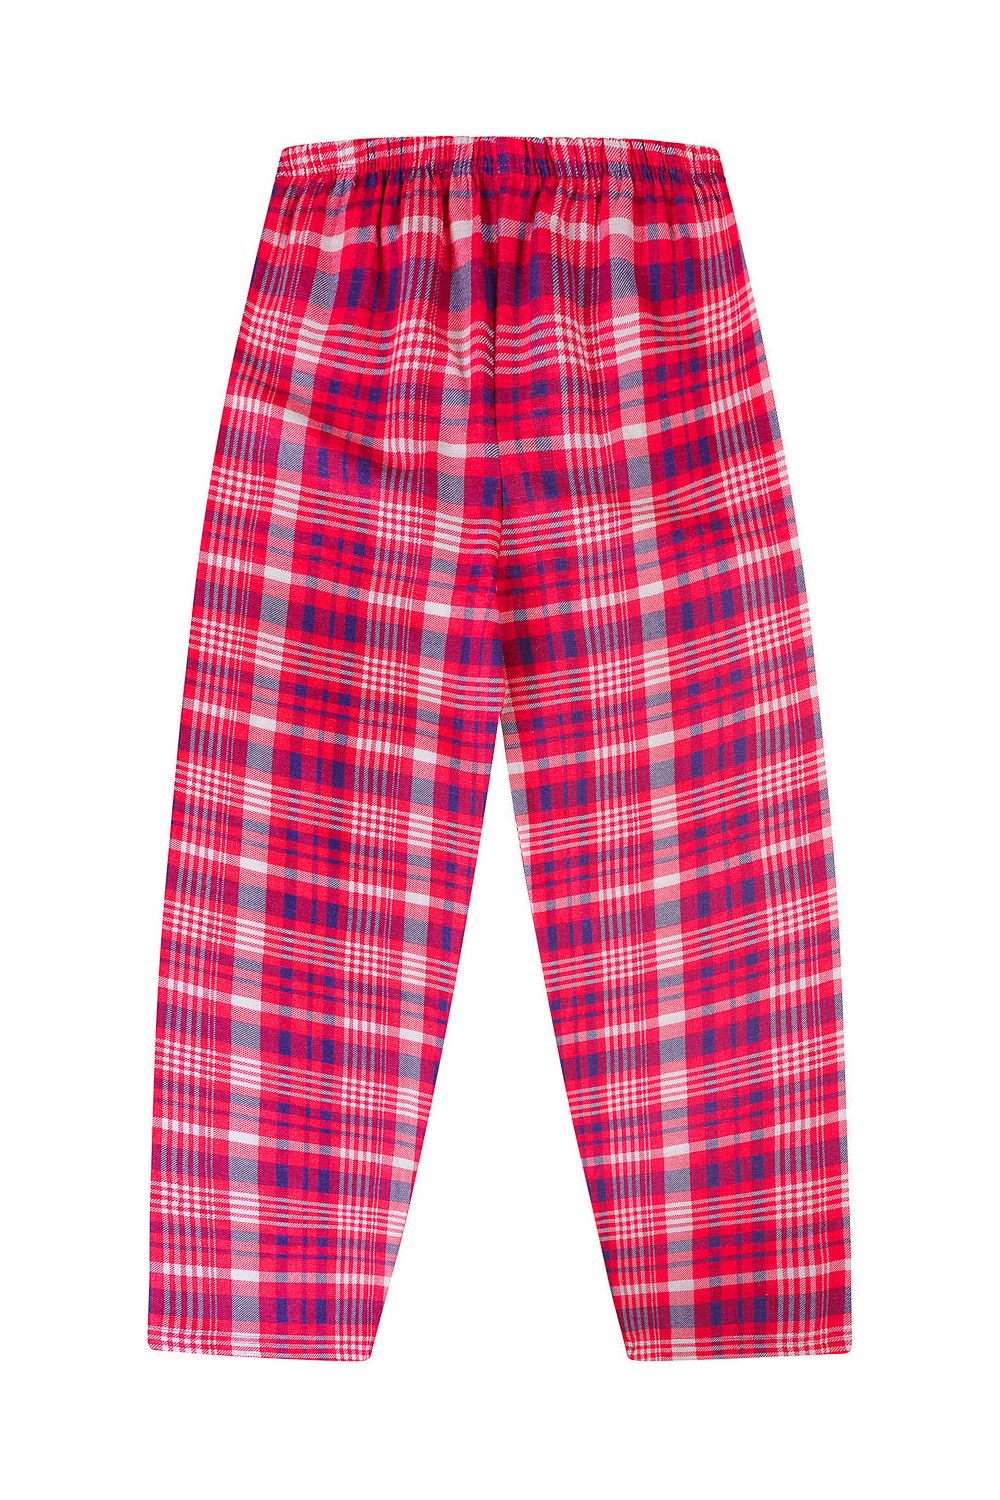 Girls Polar Bear Chillin Checked Long Pyjamas - Pyjamas.com